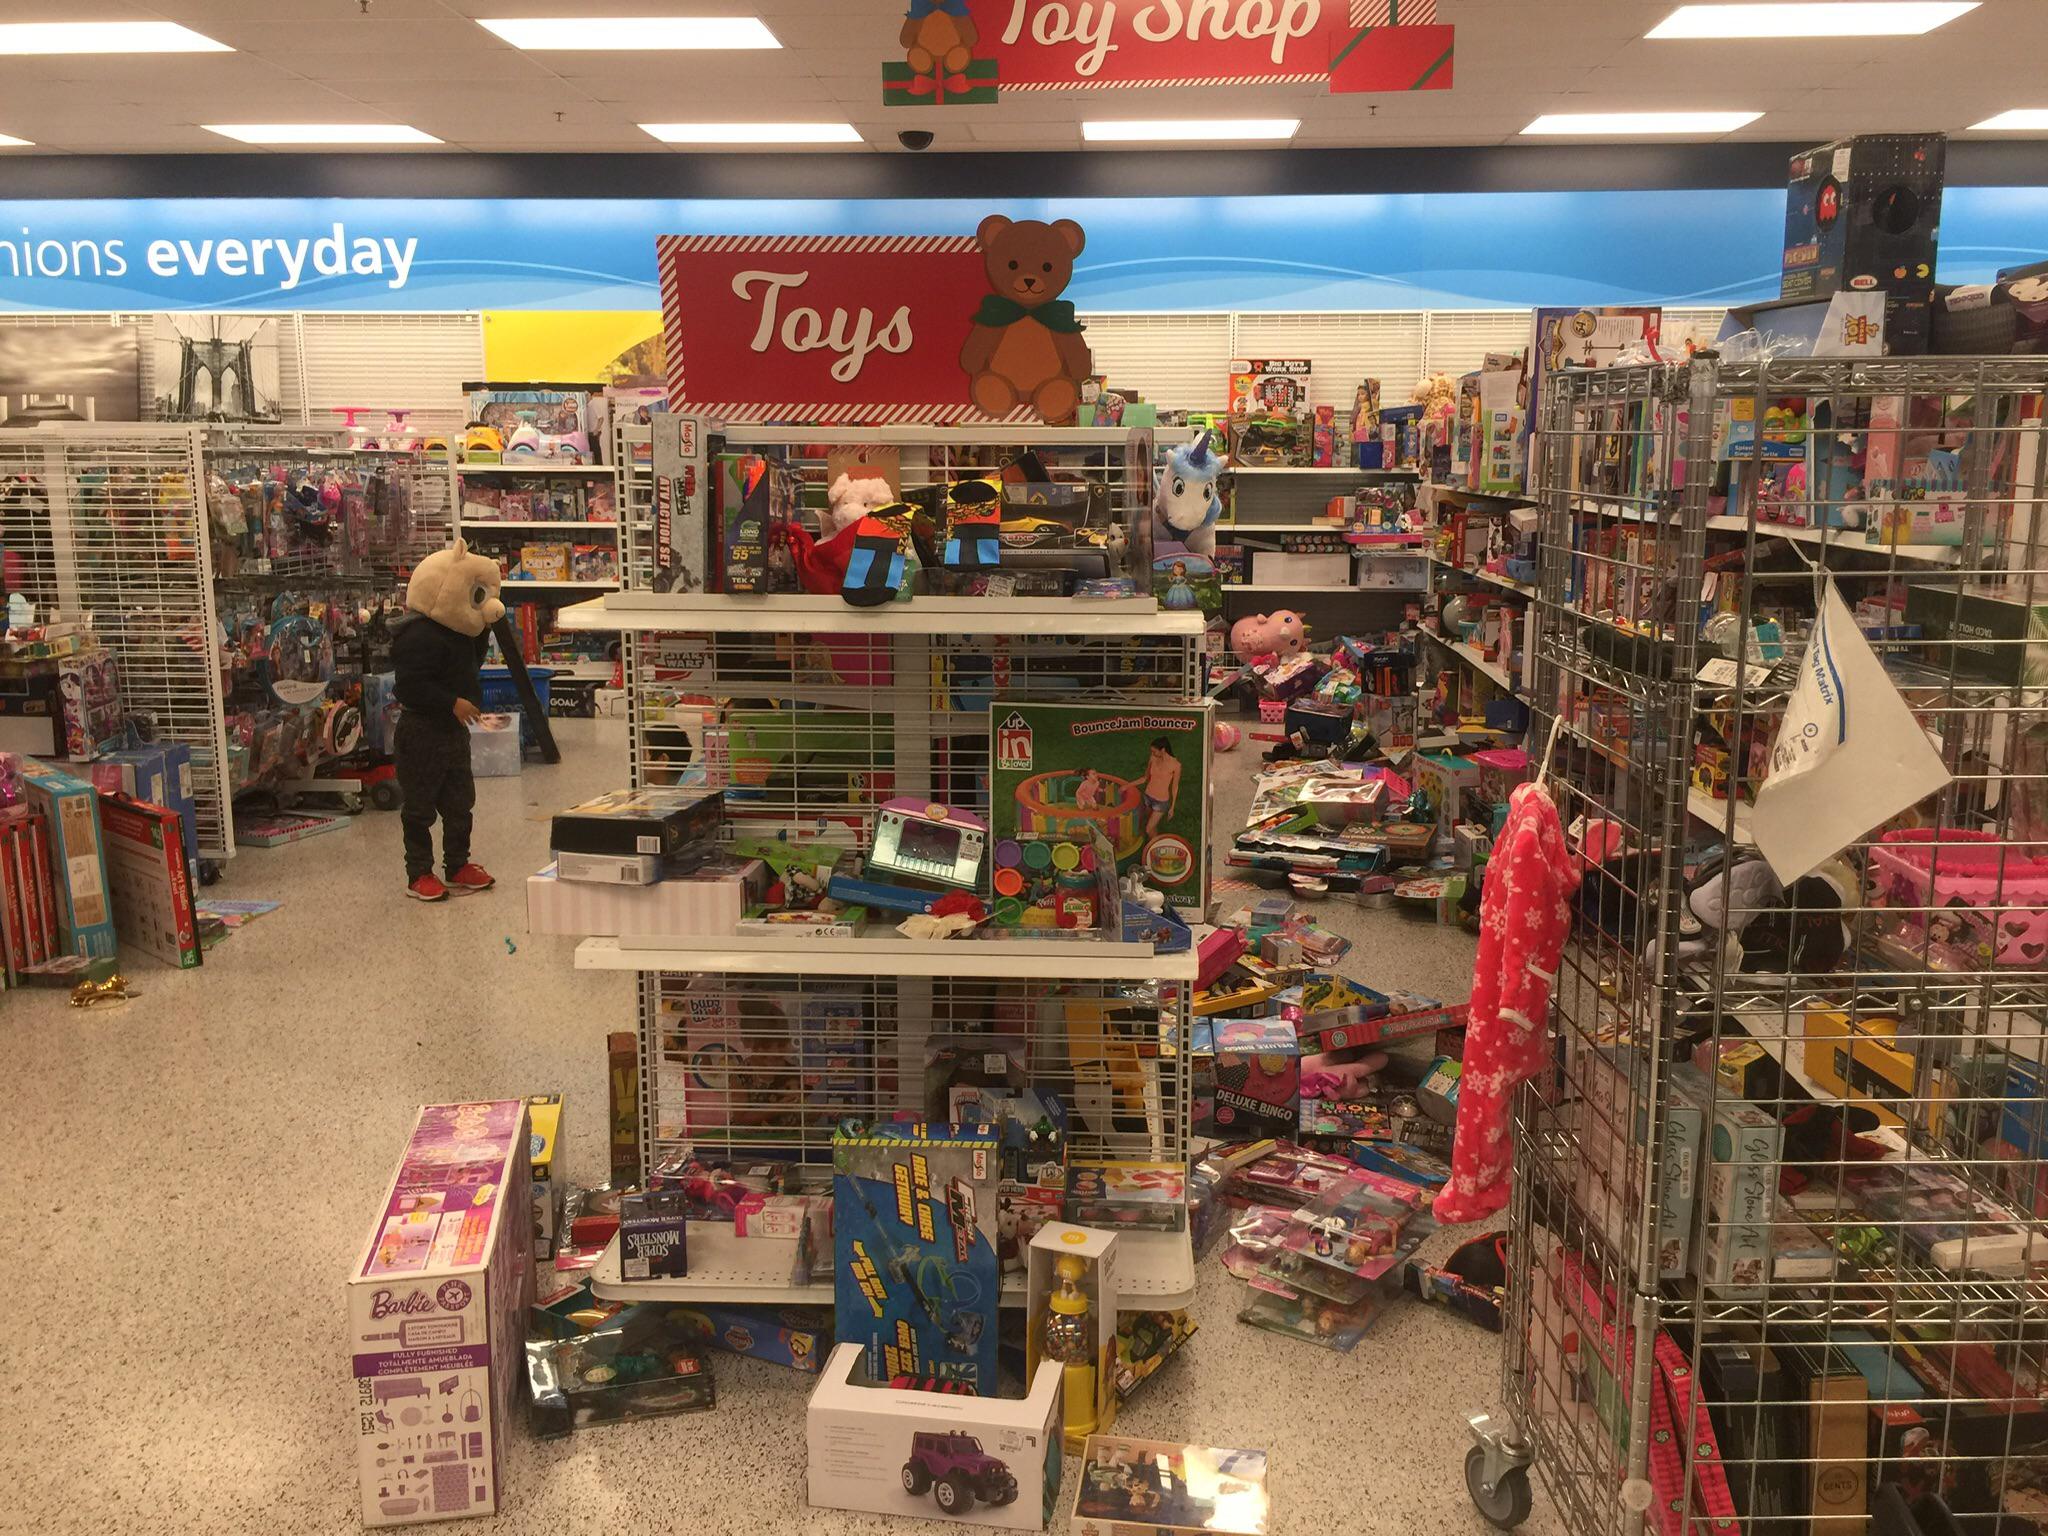 supermarket - loy shop nions everyday Toys